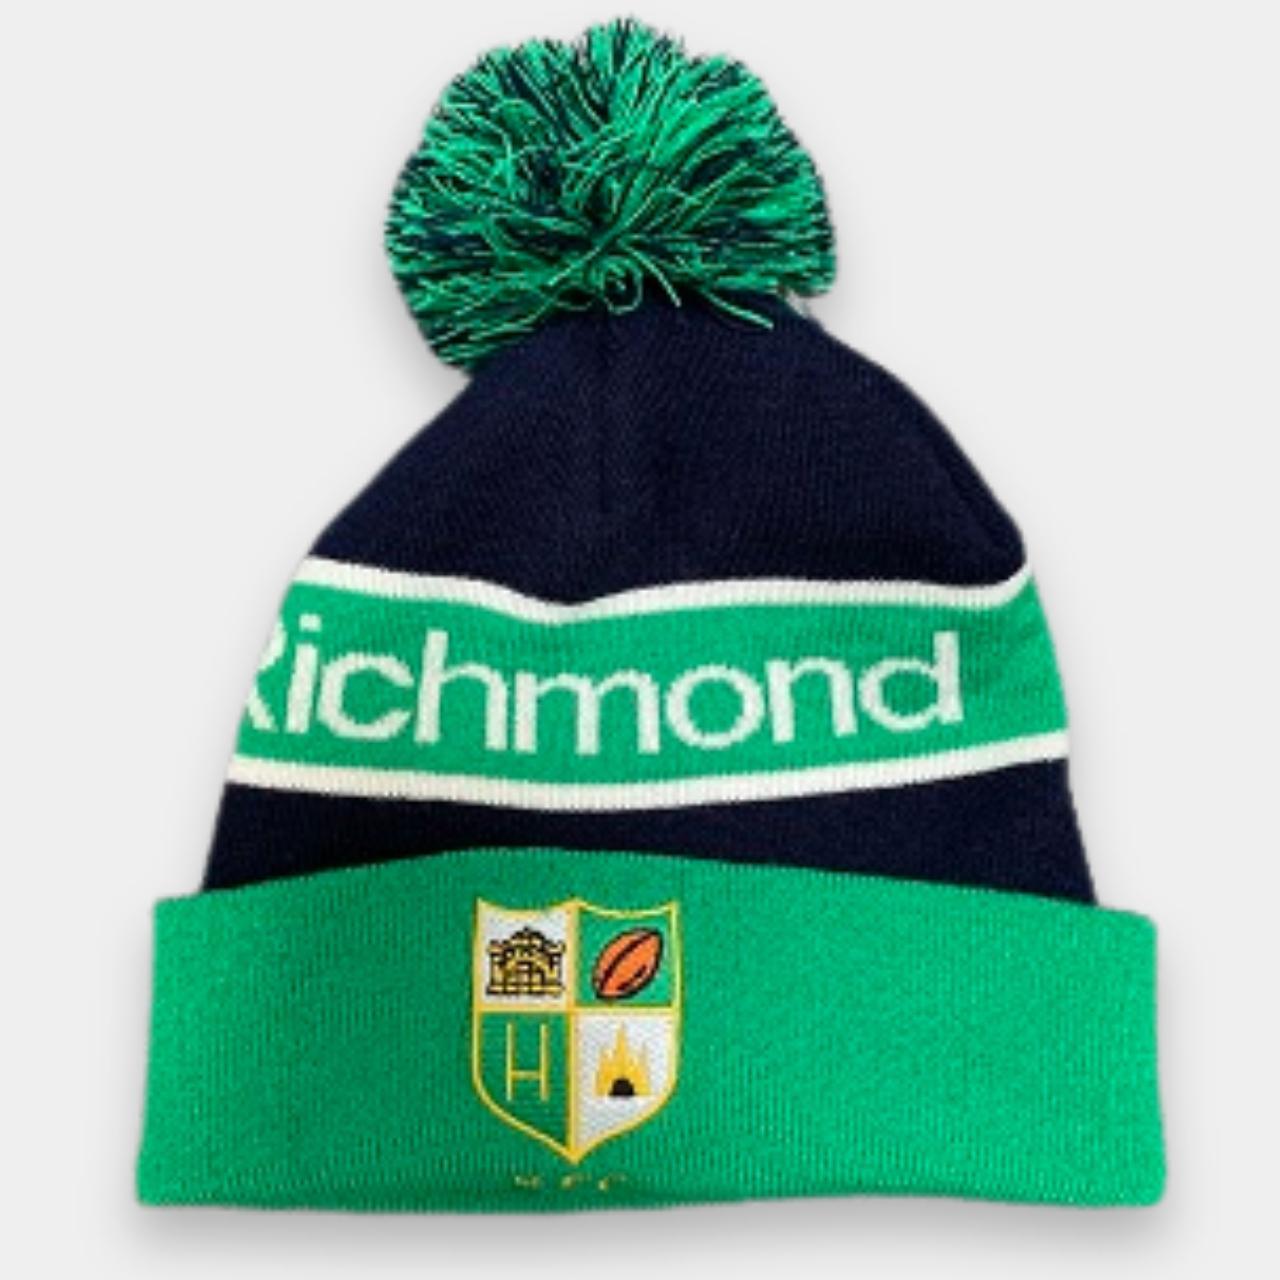 Vintage Richmond FC green beanie cap